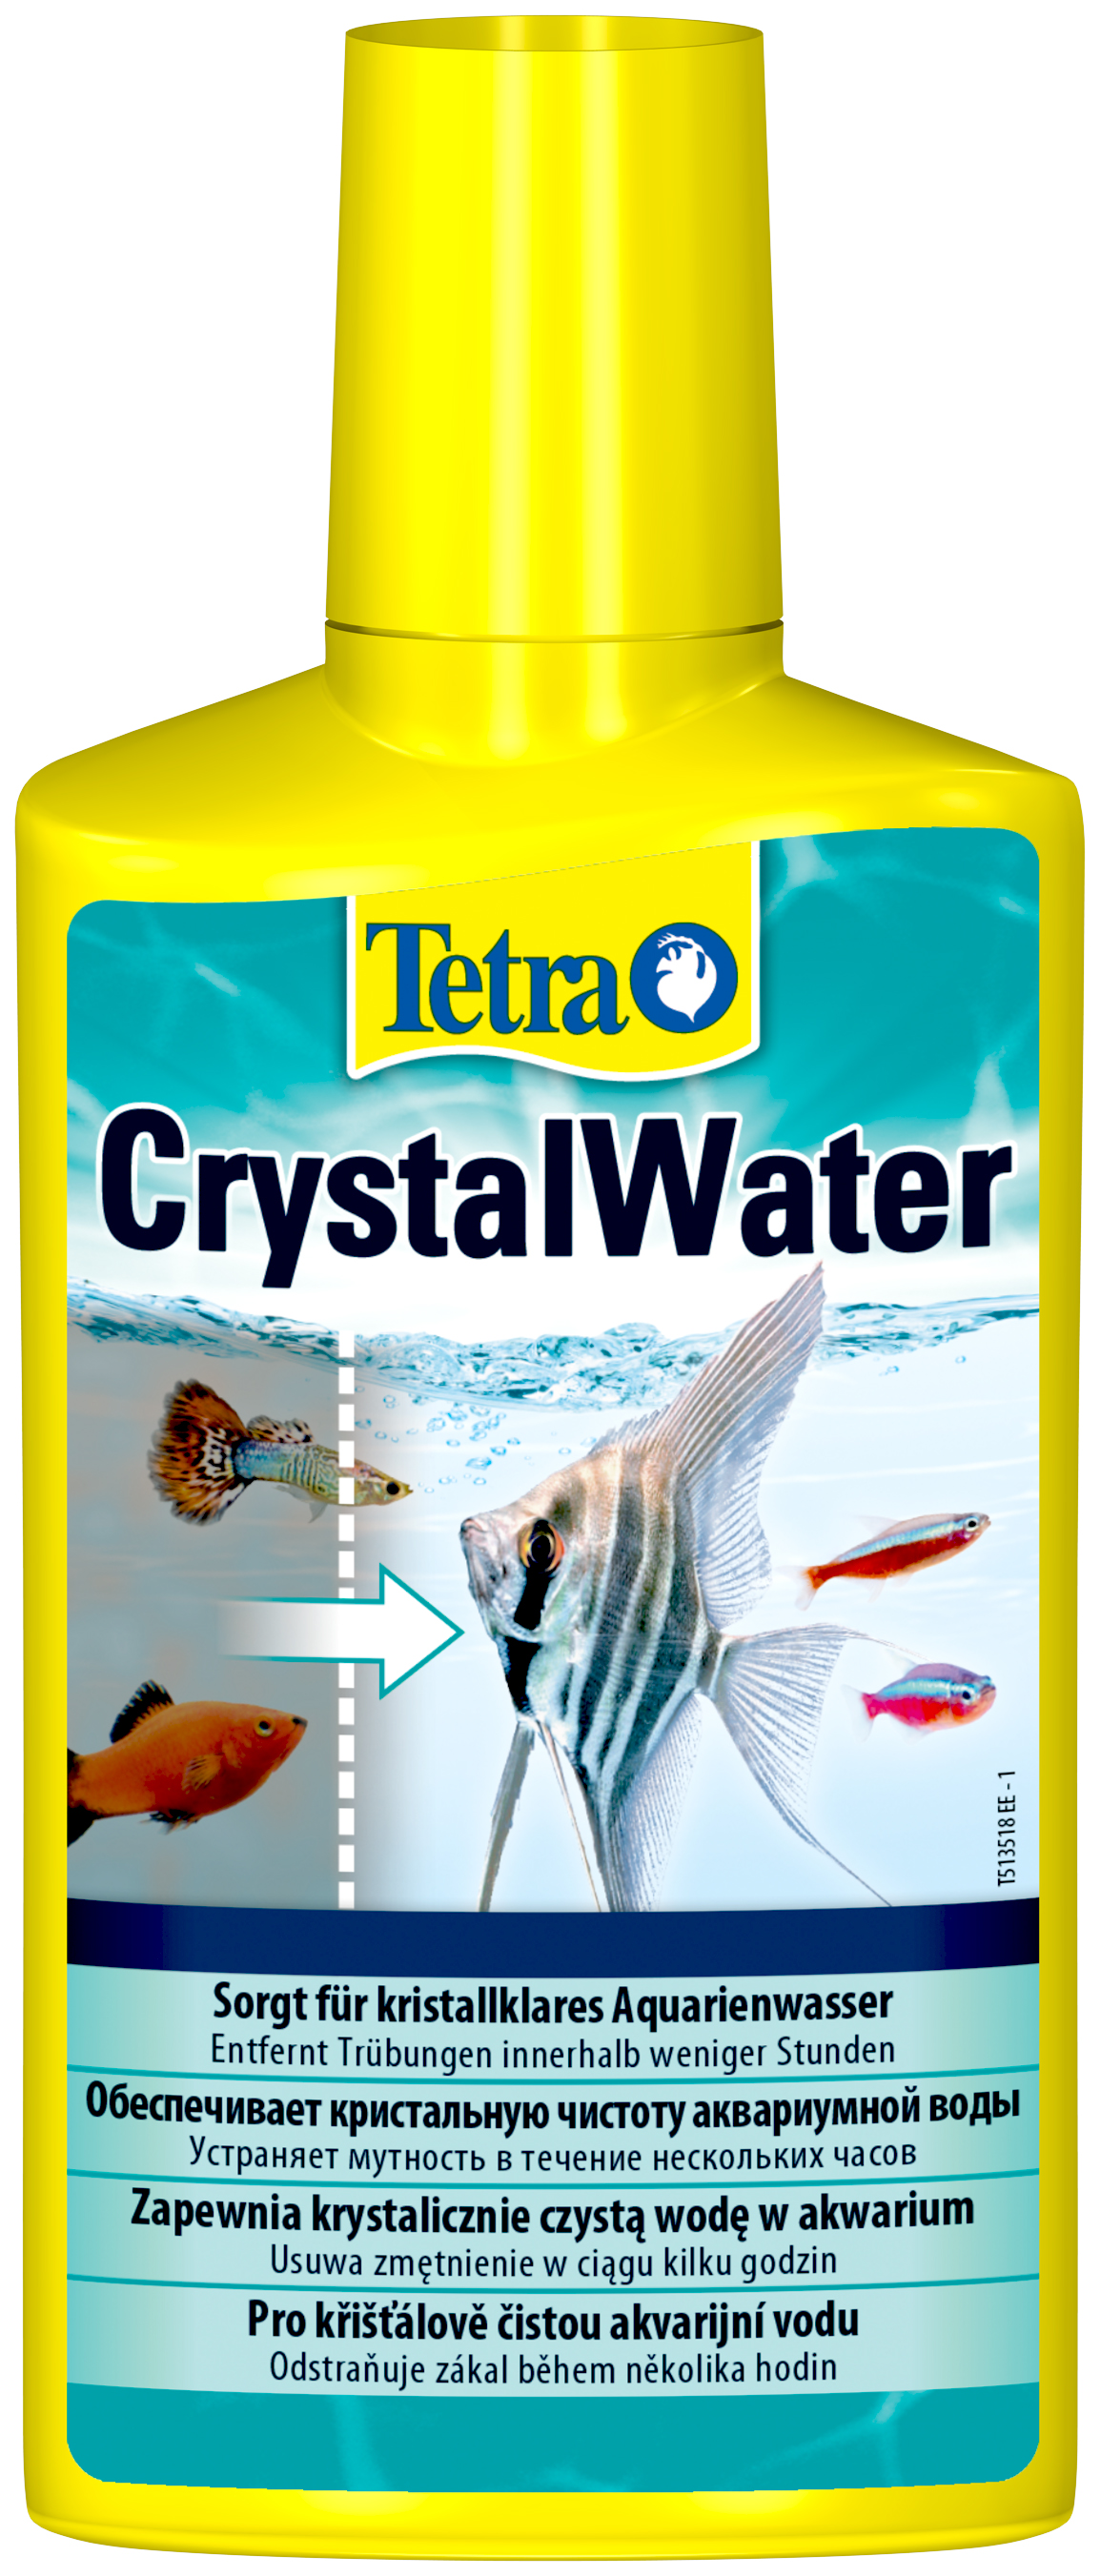 Средство Tetra CrystalWater для очистки воды от всех видов мути, 6 шт по 100 мл